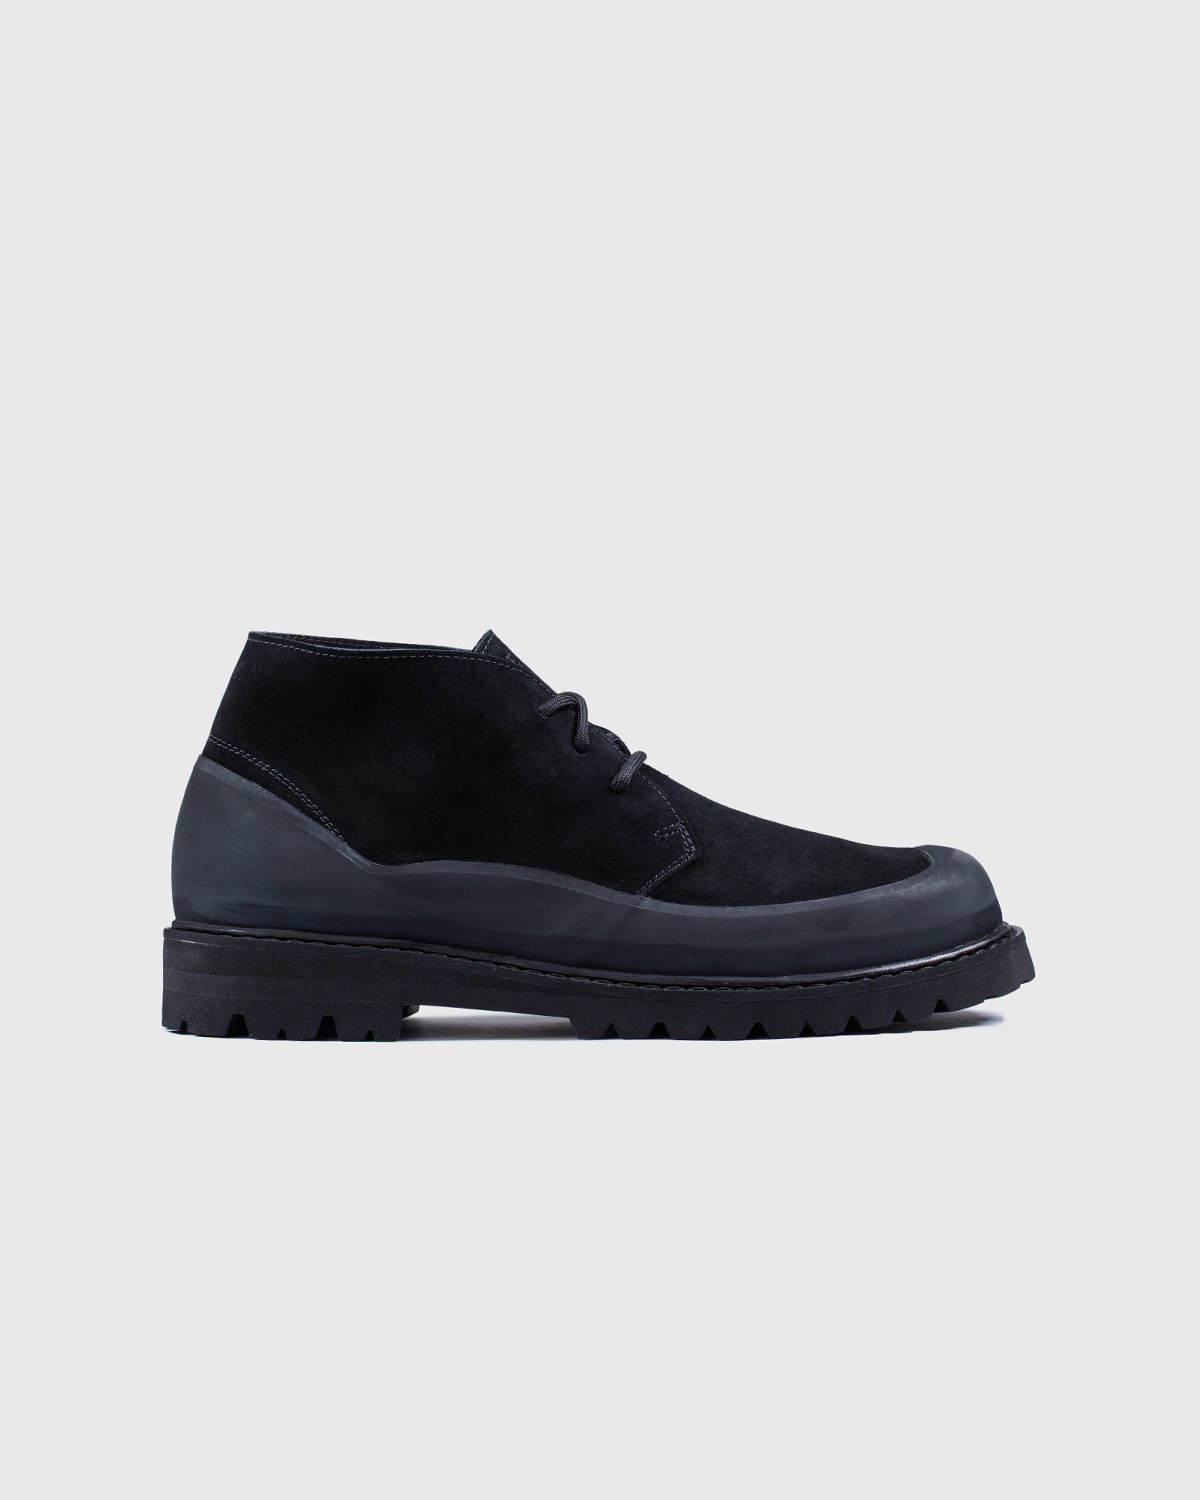 Diemme - Asiago Black Suede - Footwear - Black - Image 1